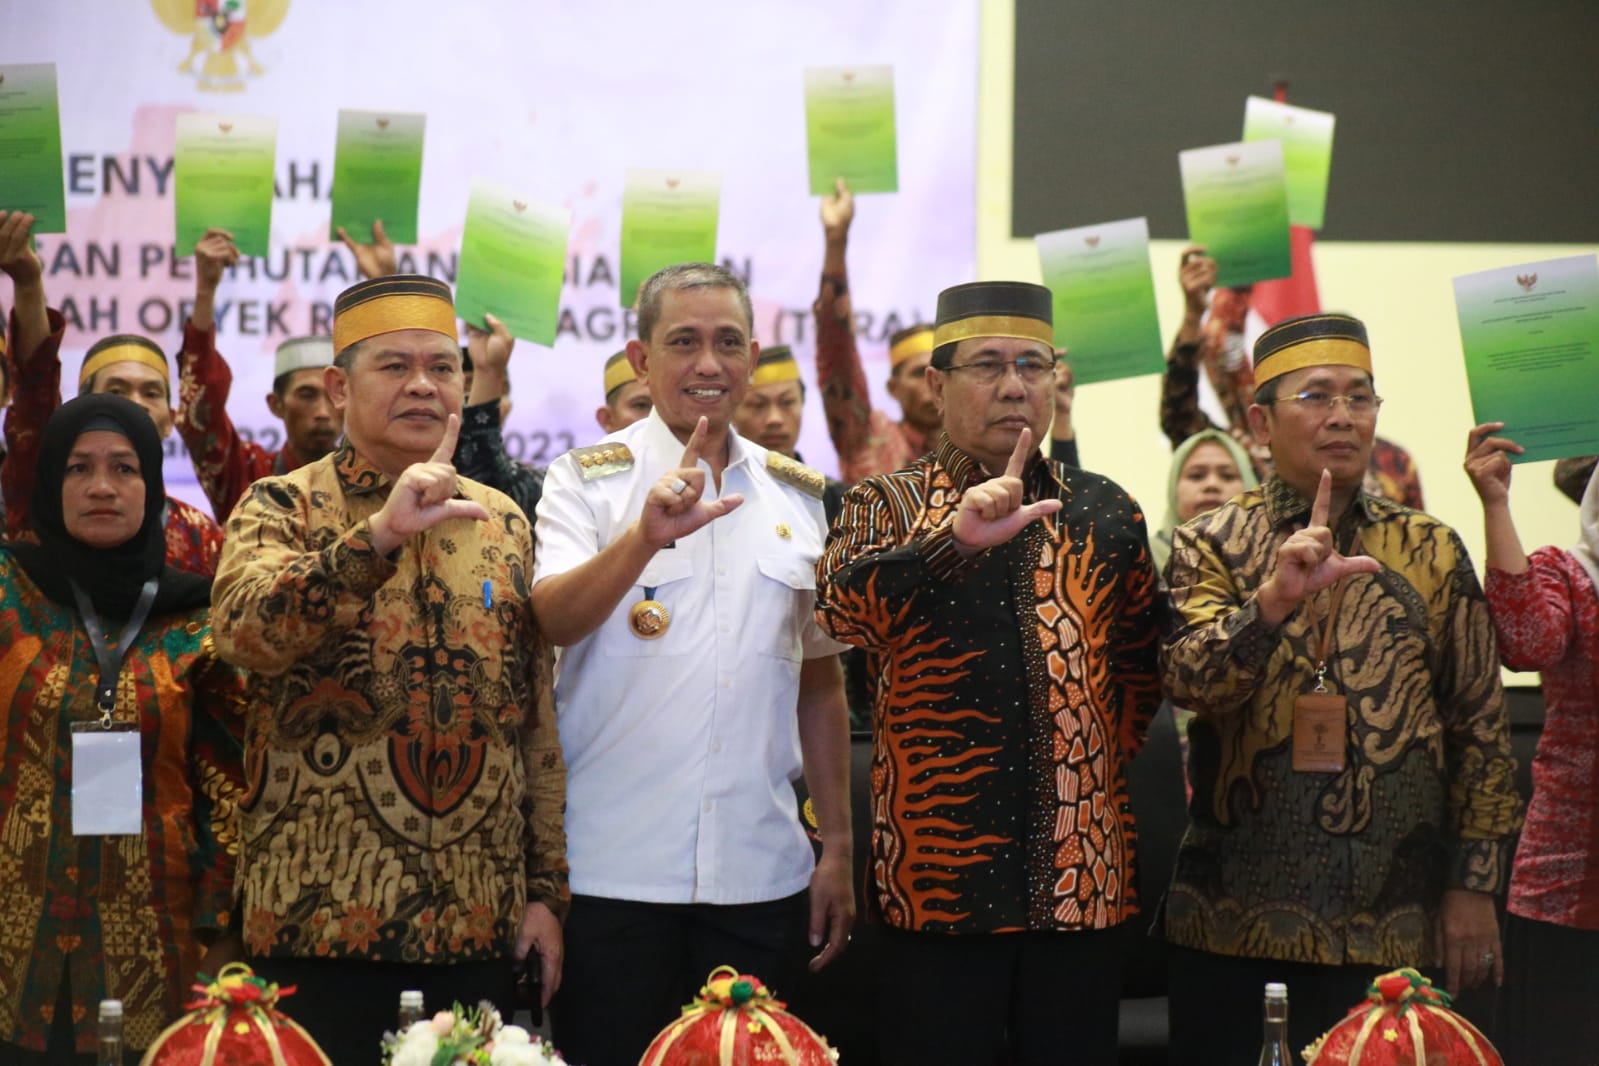 Presiden Jokowi Serahkan SK Tanah Objek Reforma Agraria ke 1.409 Penerima di Wajo 